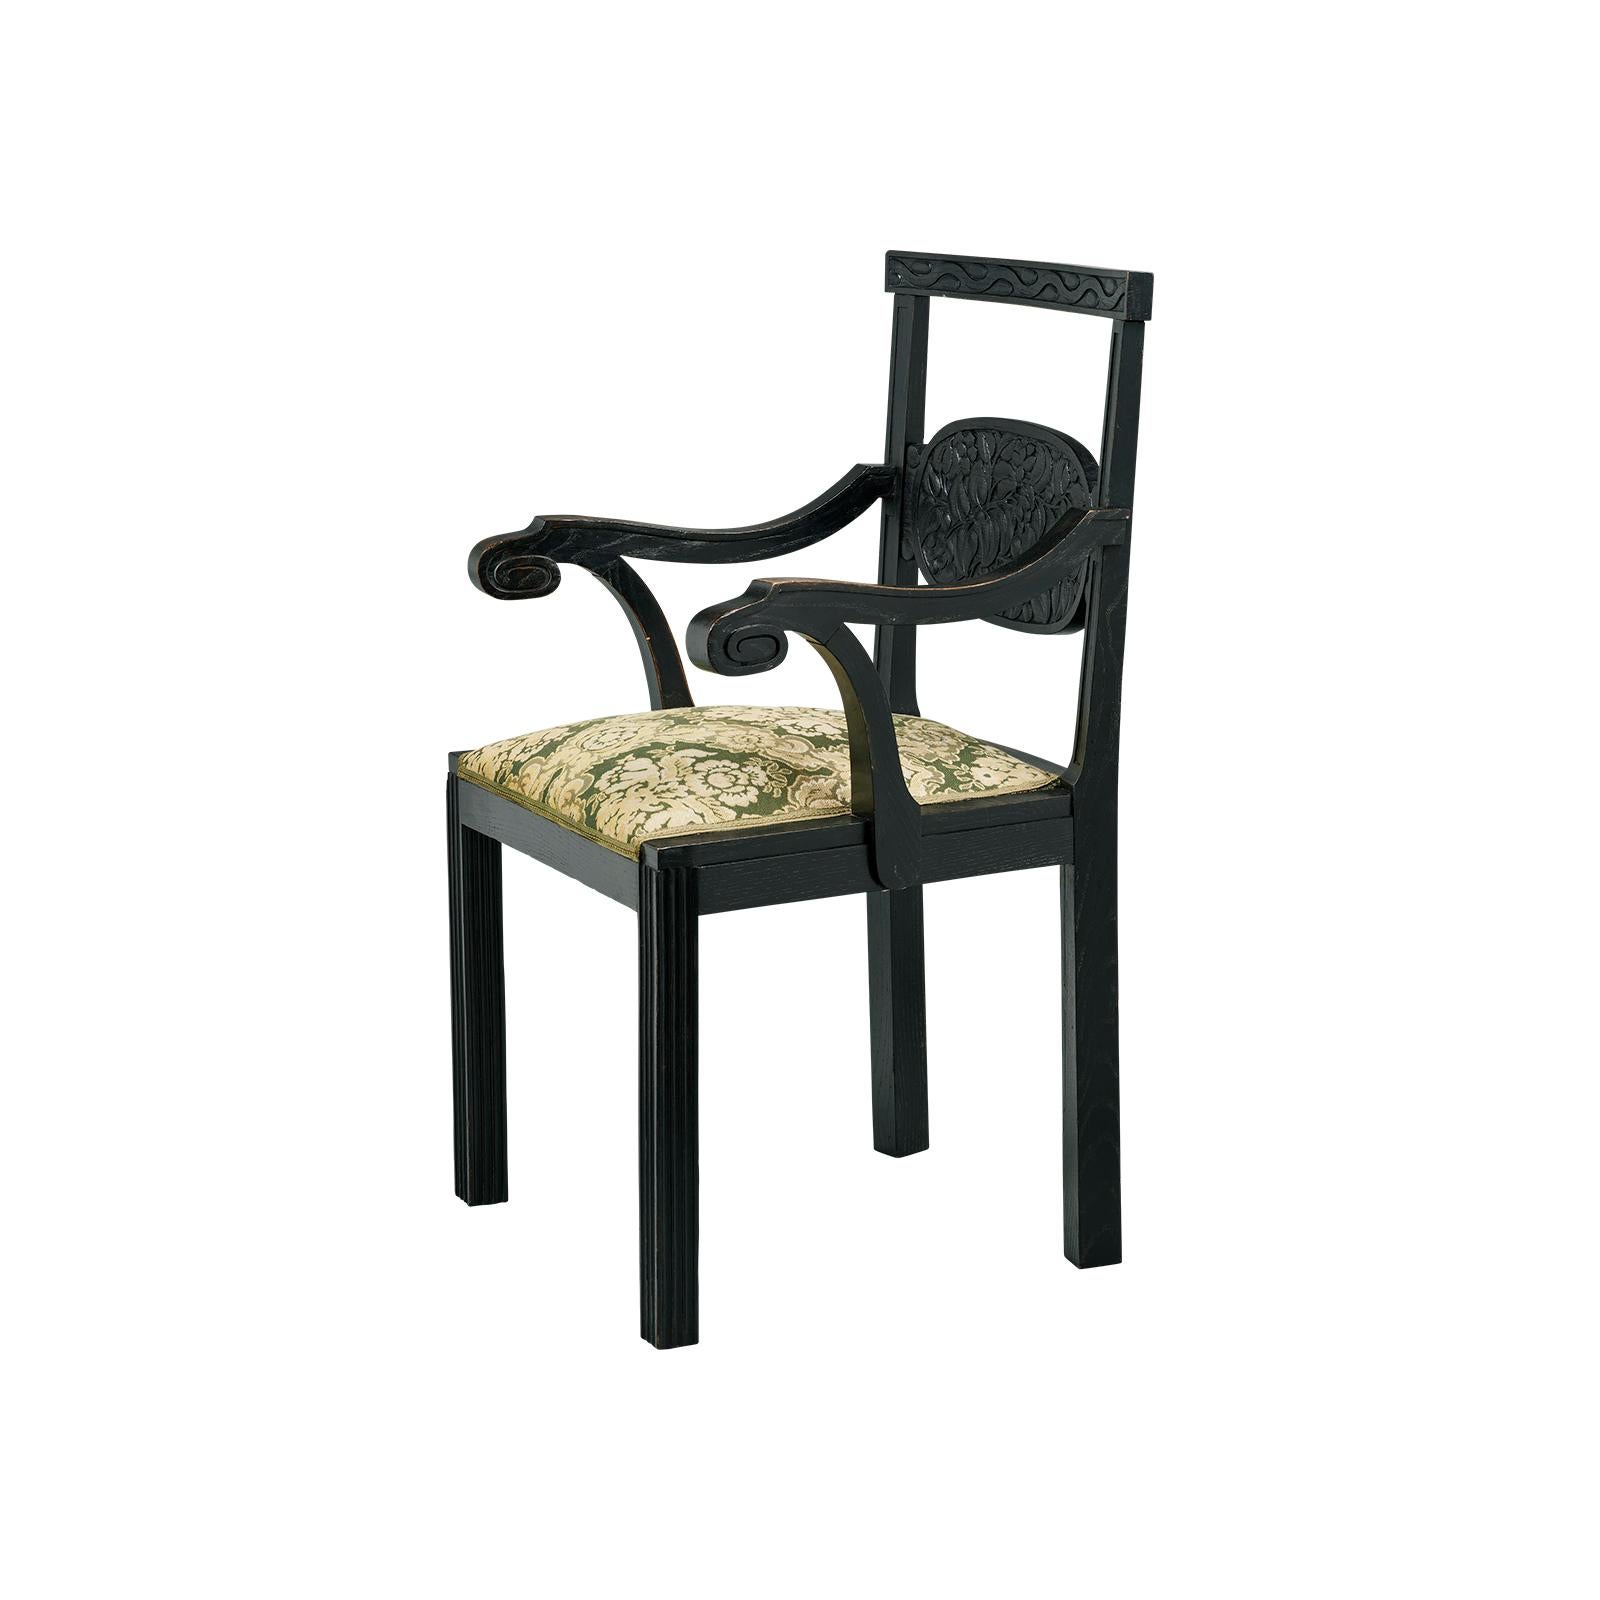 Jugendstil Rare Original Josef Hoffmann Chair, 1912 For Sale